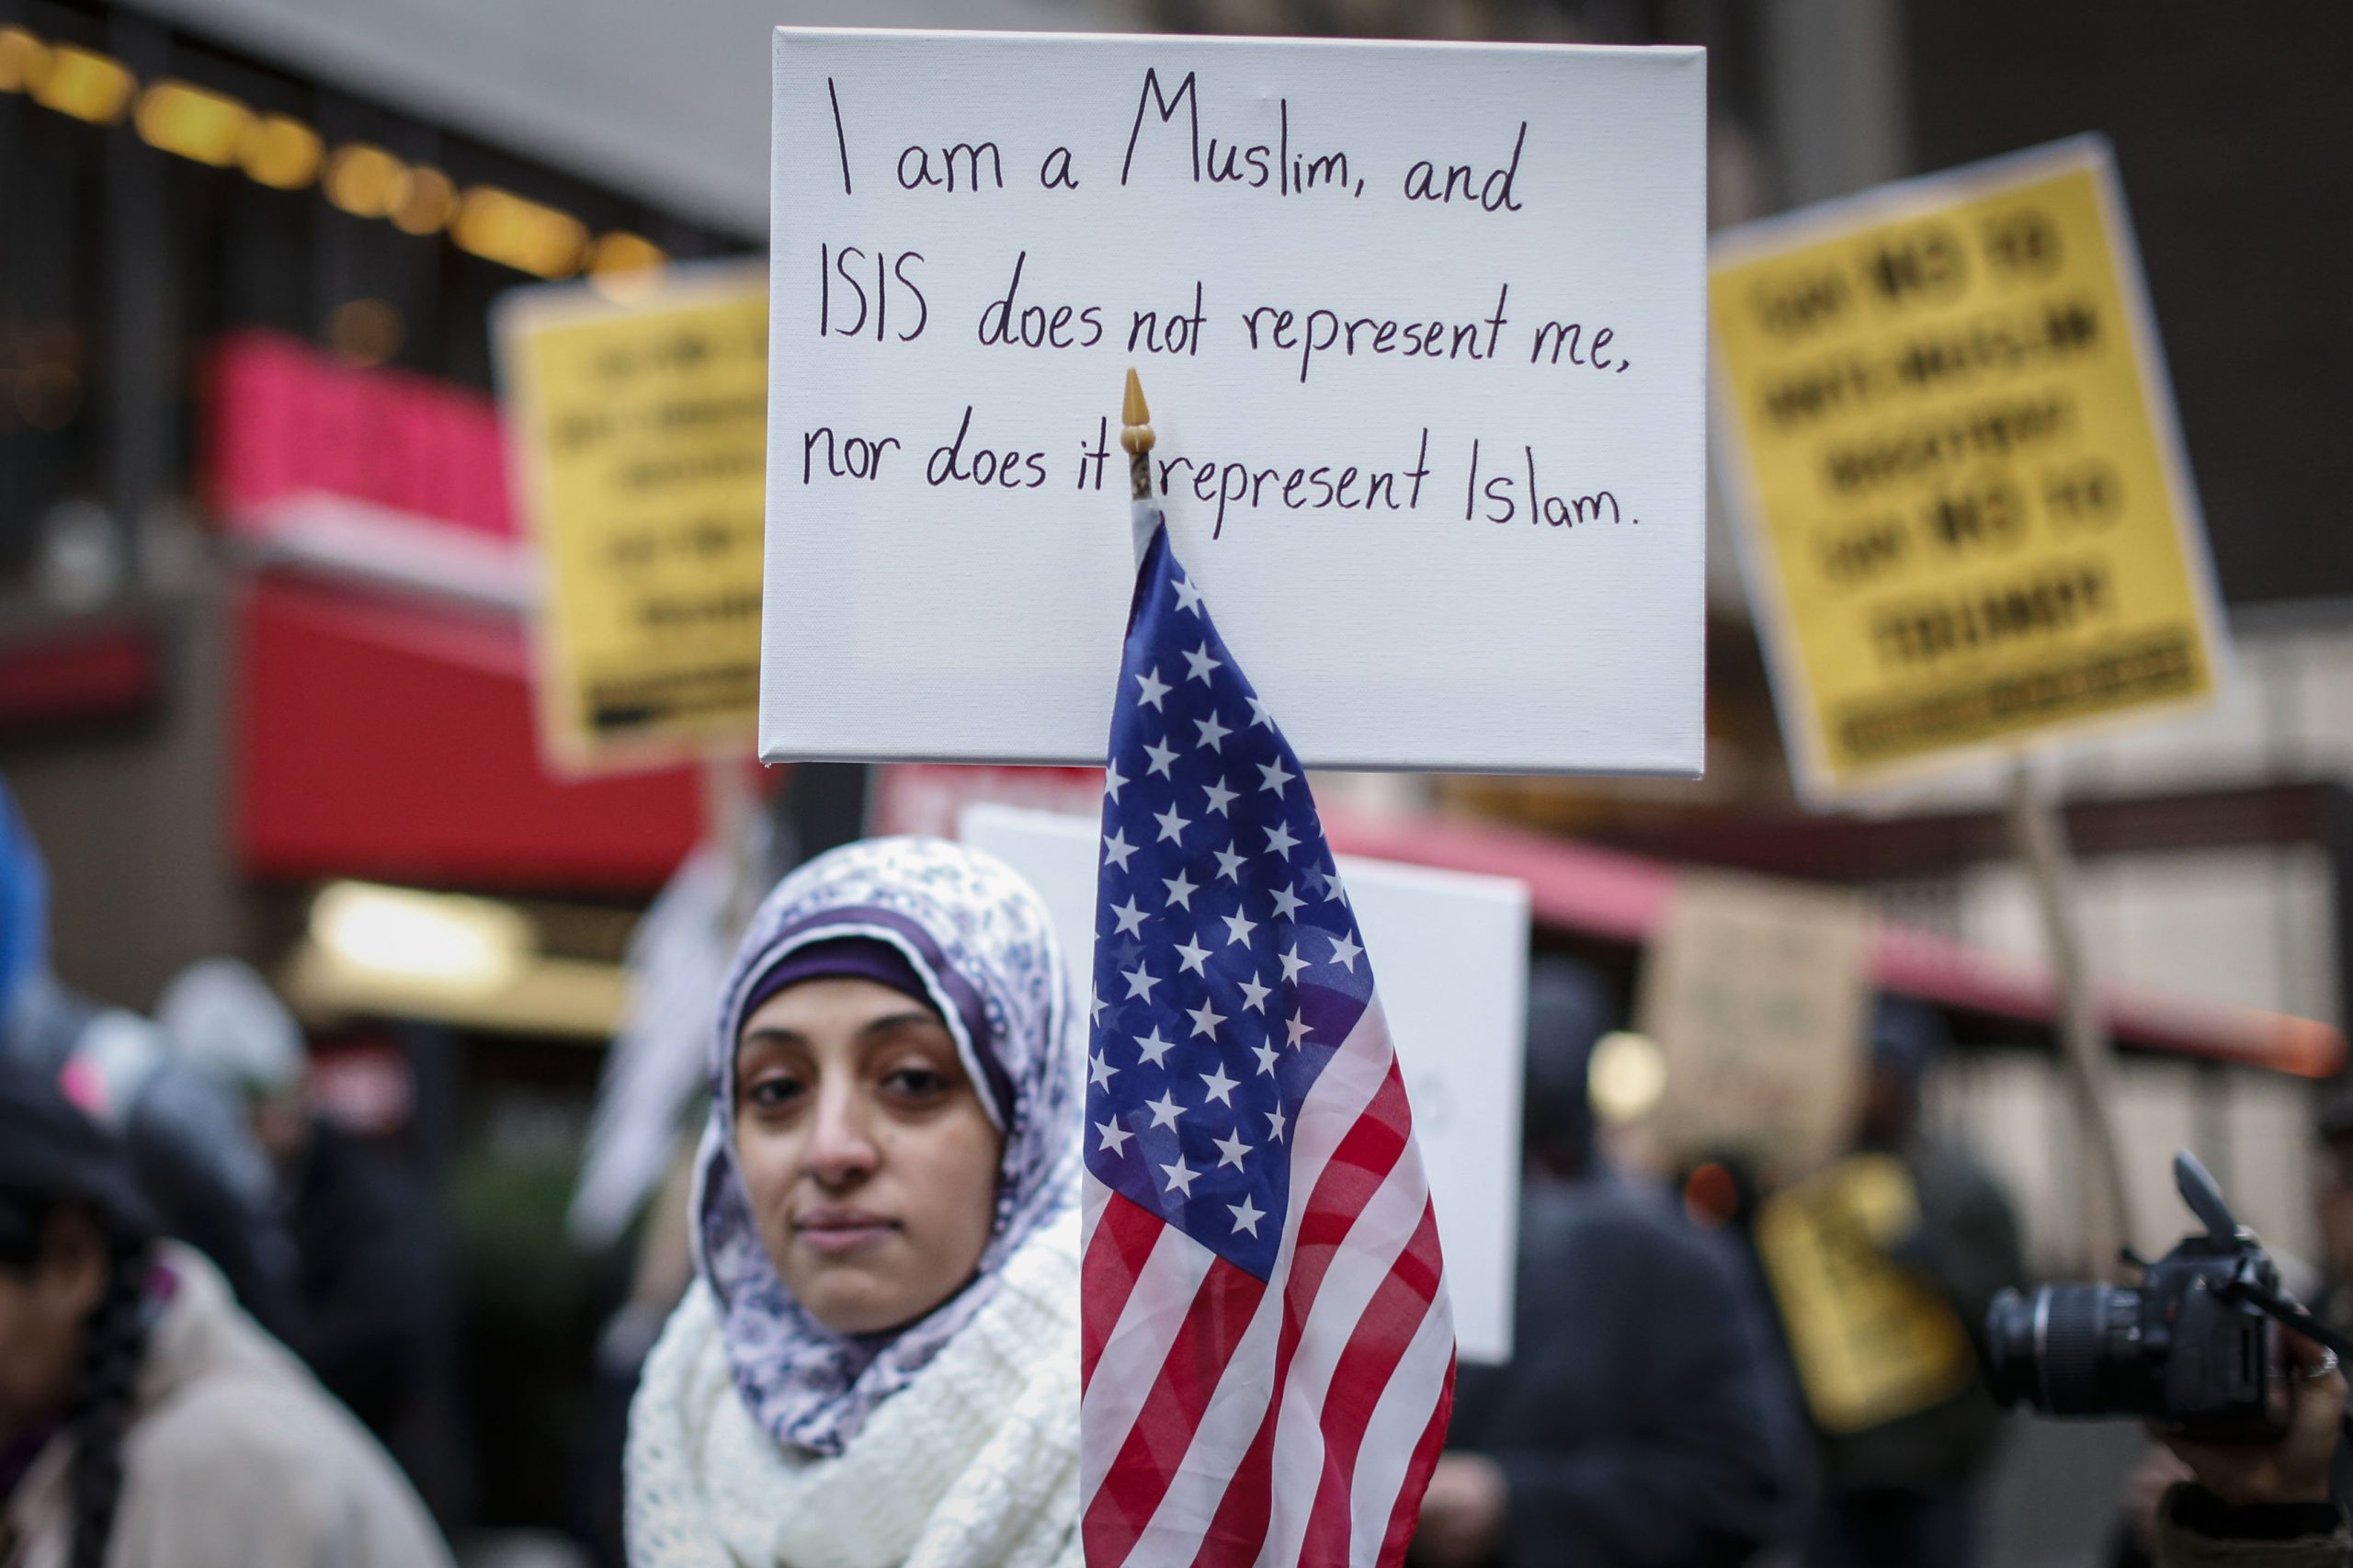 FBI : Kebencian Terhadap Muslim di AS Menurun Signifikan